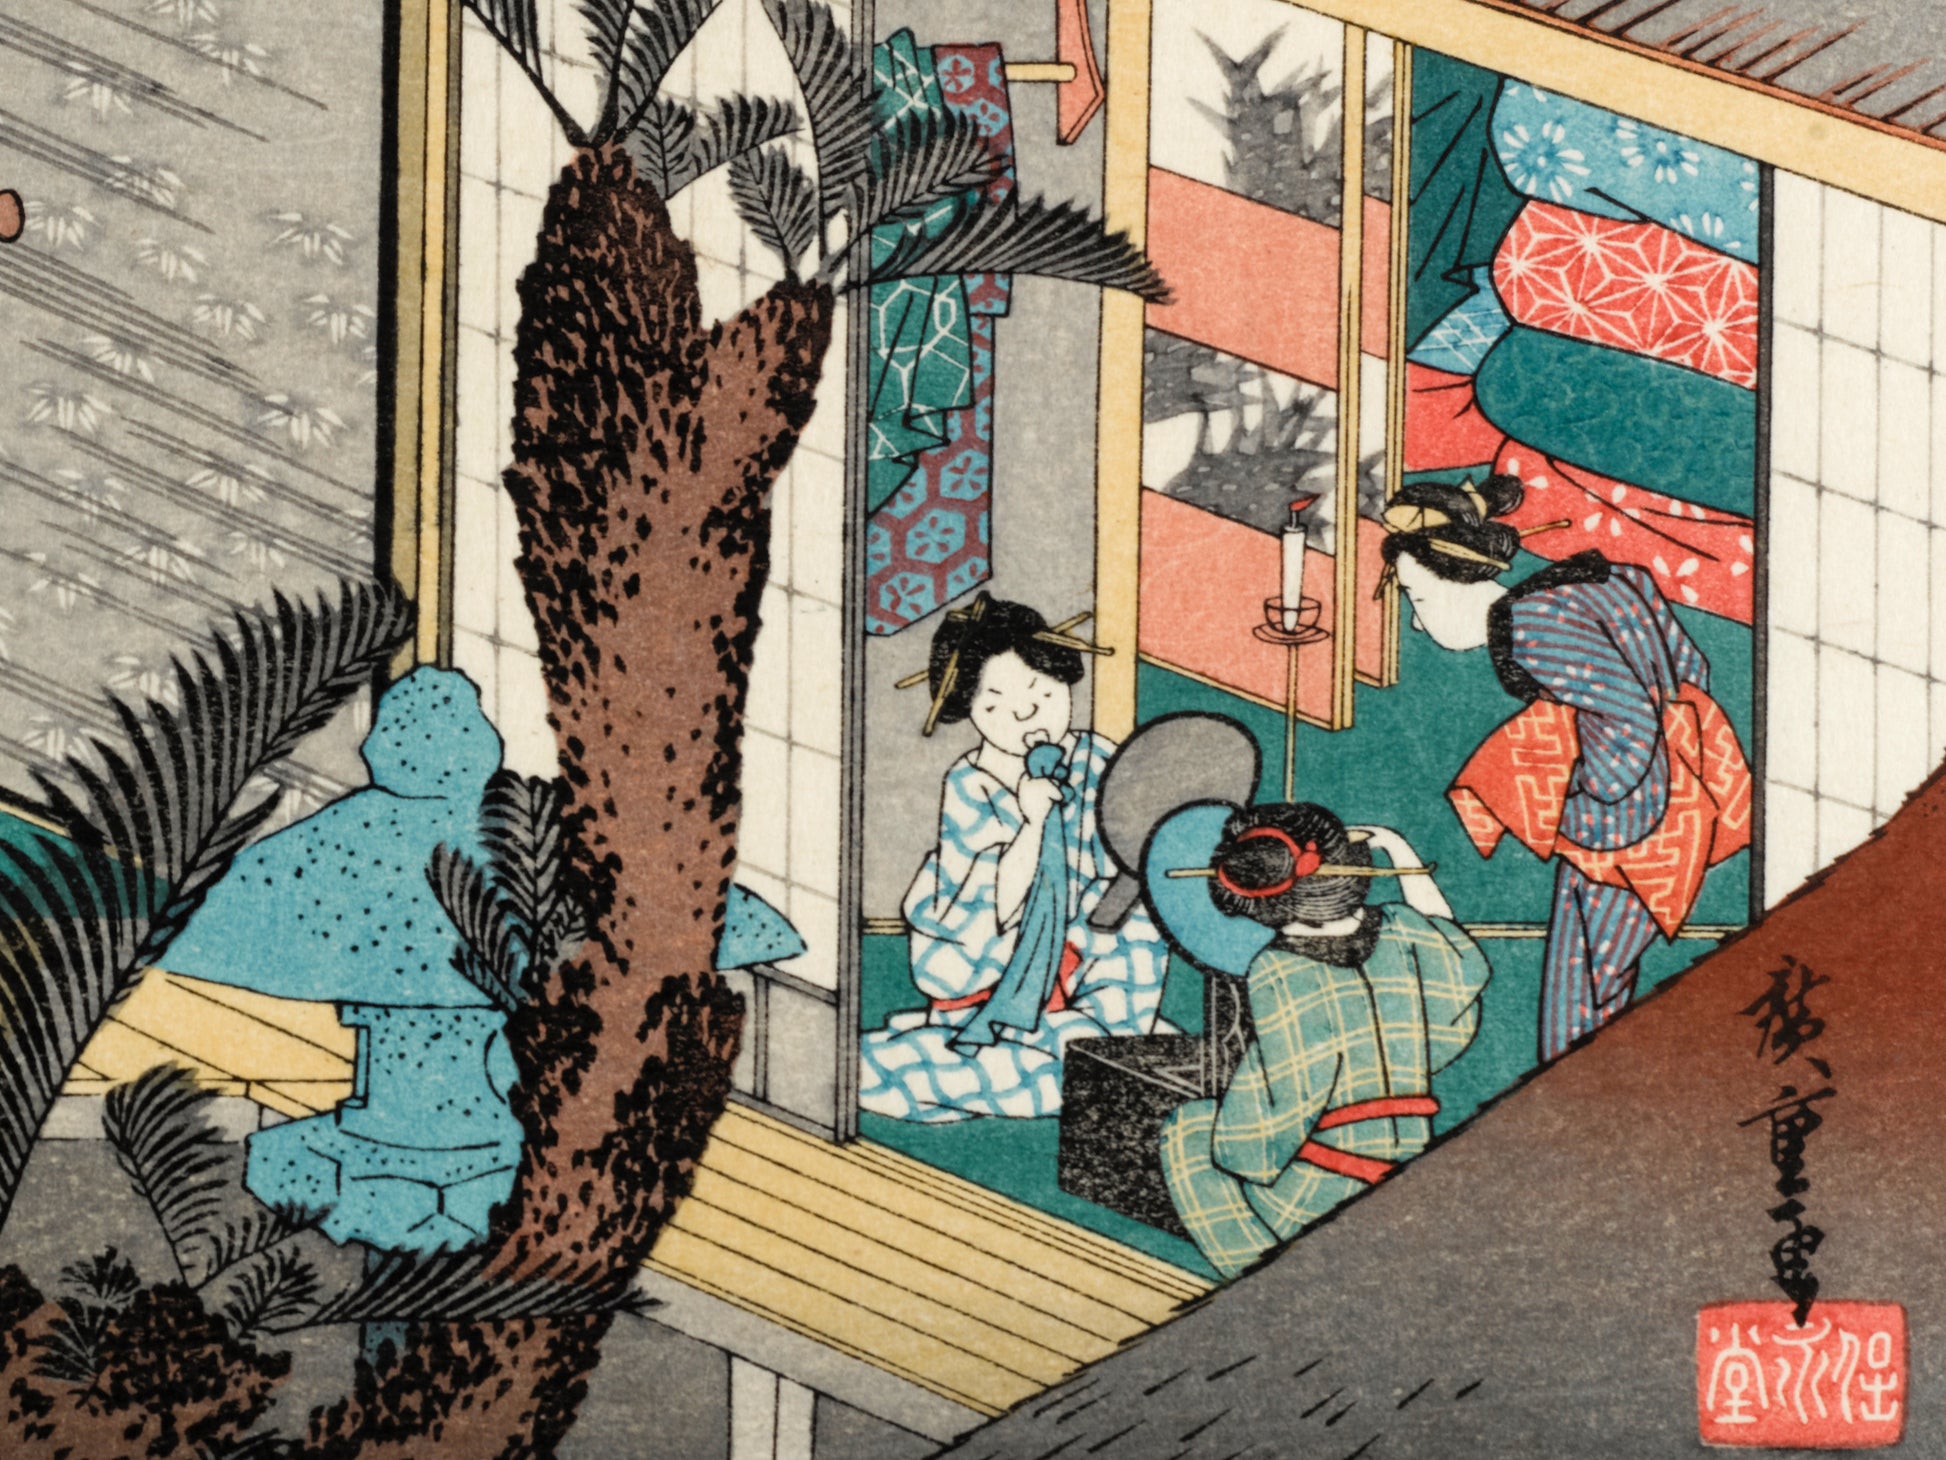 estampe japonaise intérieur d'une auberge avec voyageurs et geishas, coiffure et maquillage